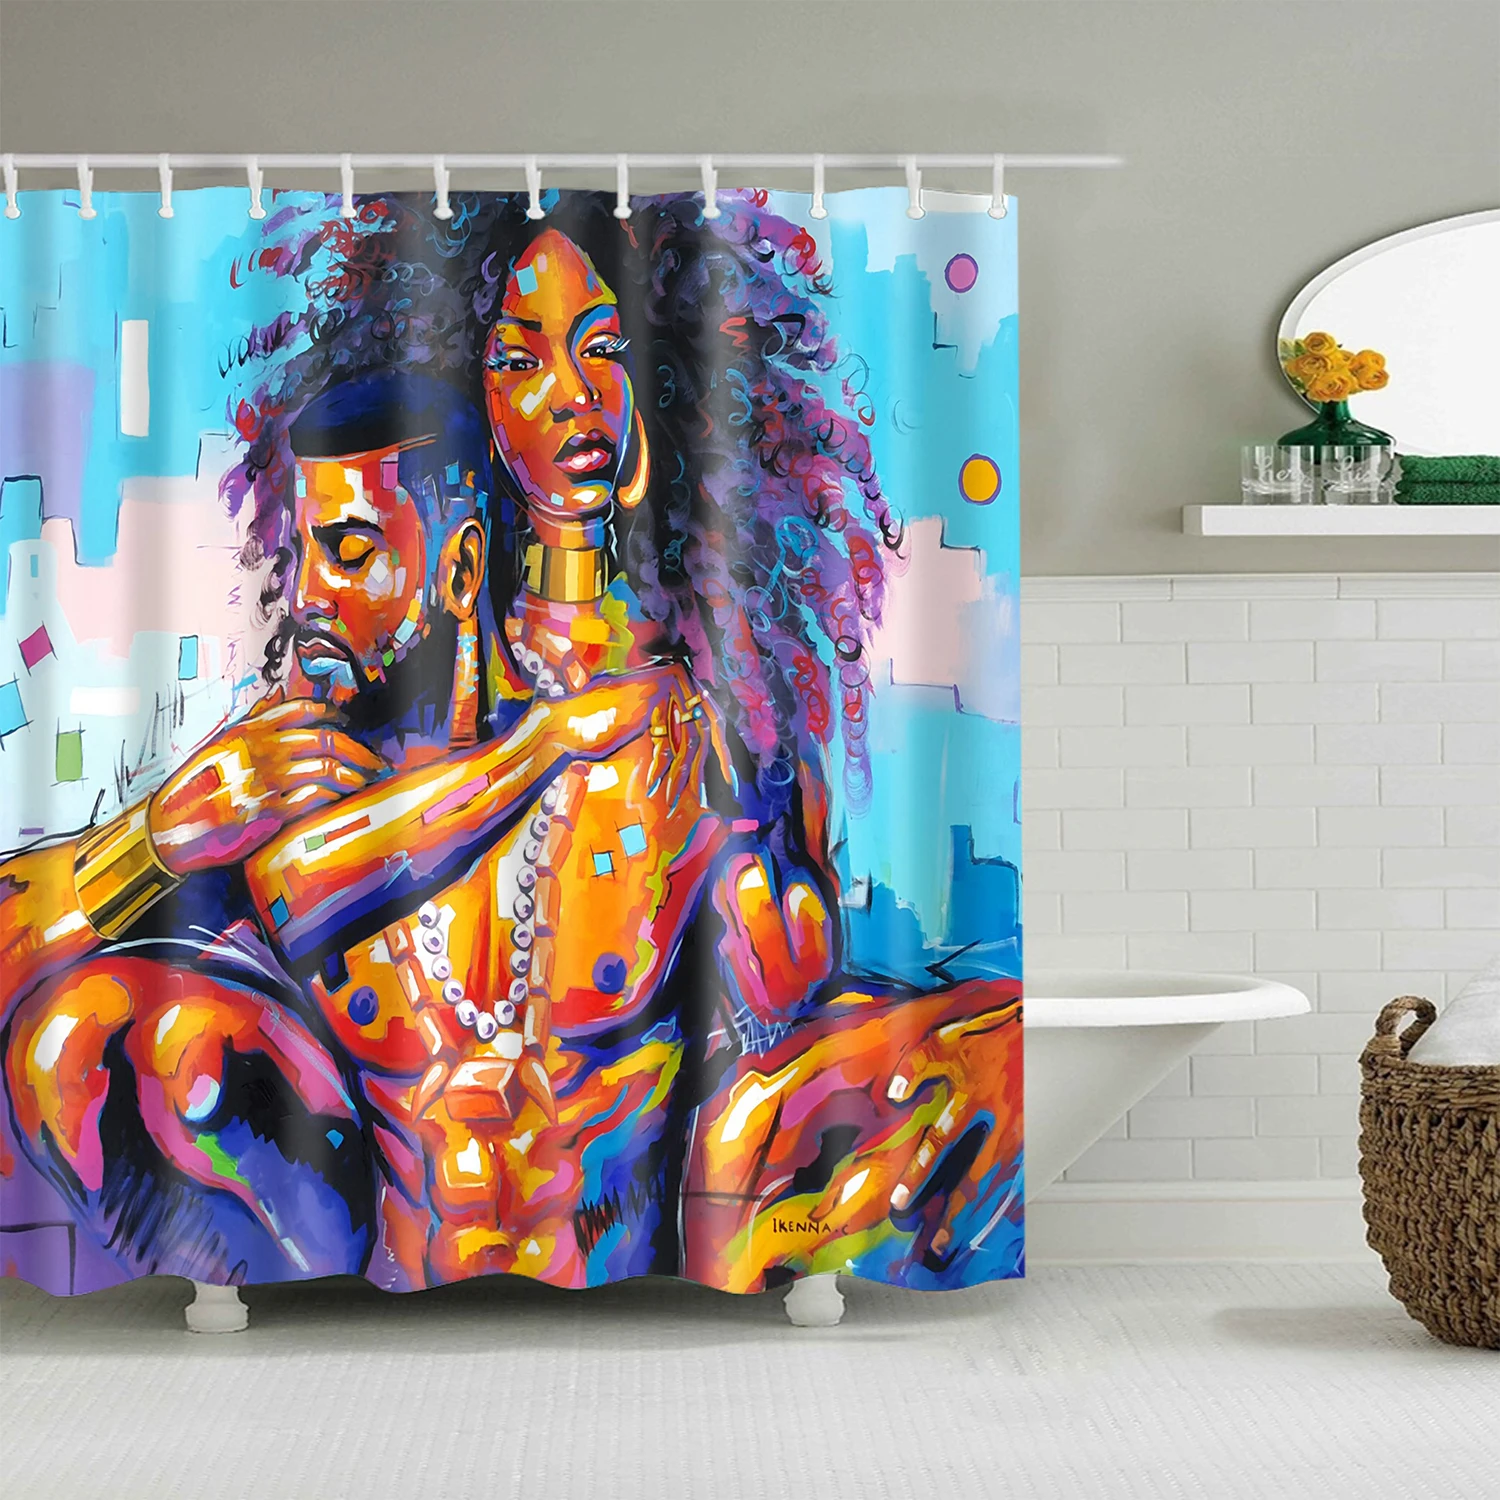 Картина маслом фантазия женщина портрет занавеска для душа s для ванной водонепроницаемый пользовательский ванная комната занавеска ткань для детской ванной Декор